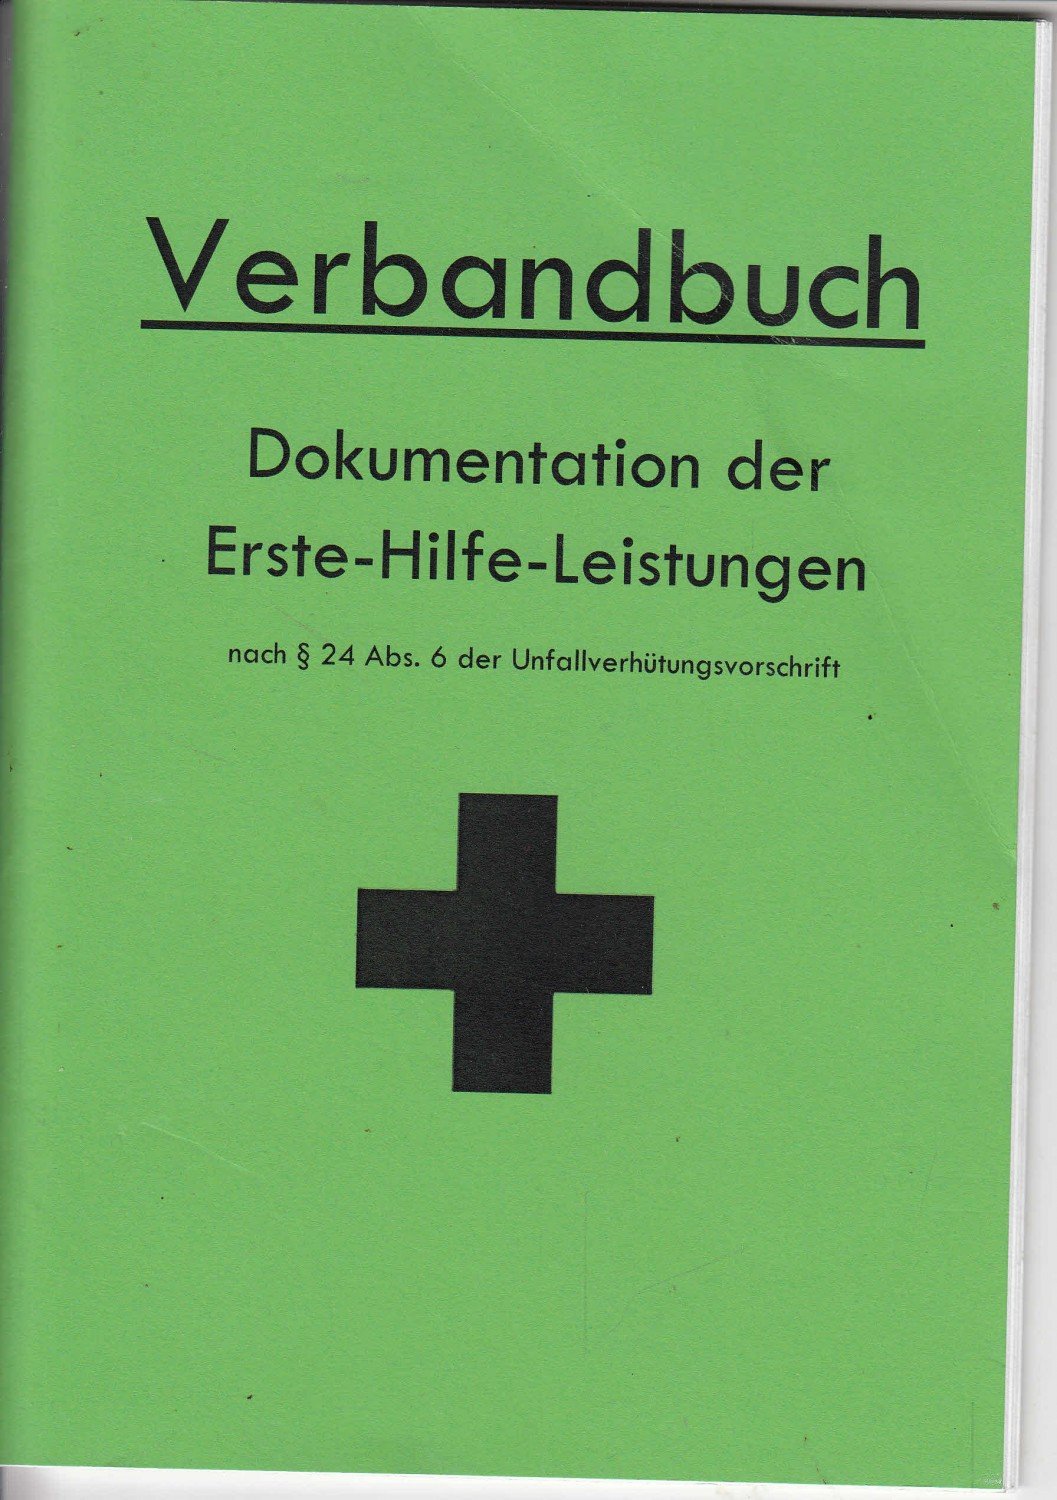 Verbandbuch für Eintragung von Erste Hilfe Leistungen, 16 Seiten